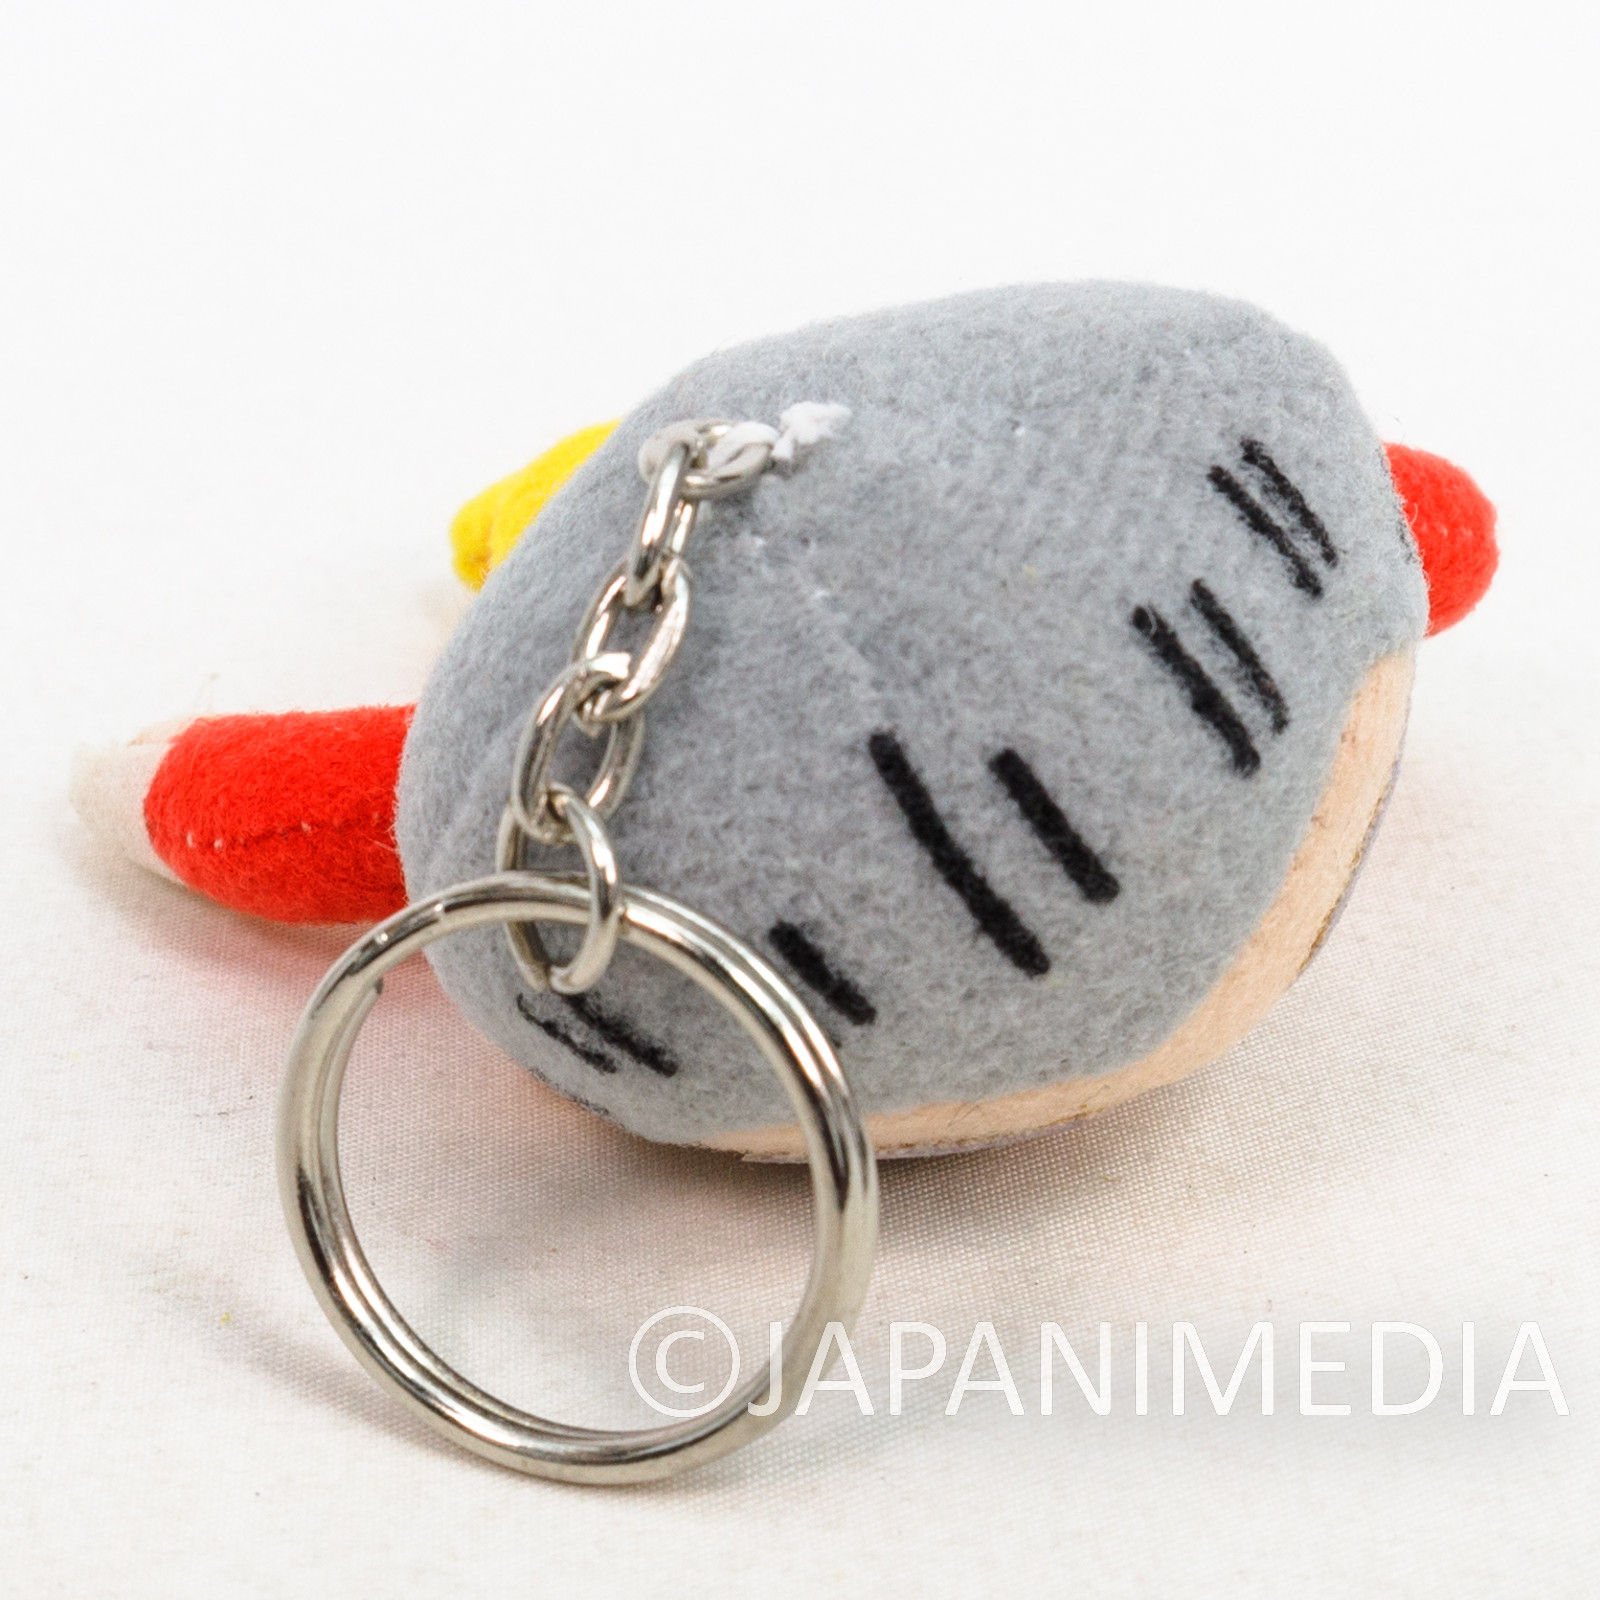 RARE! Battle Arena Toshinden Fo Fai Plush Doll Keychain / TAKARA Playstation